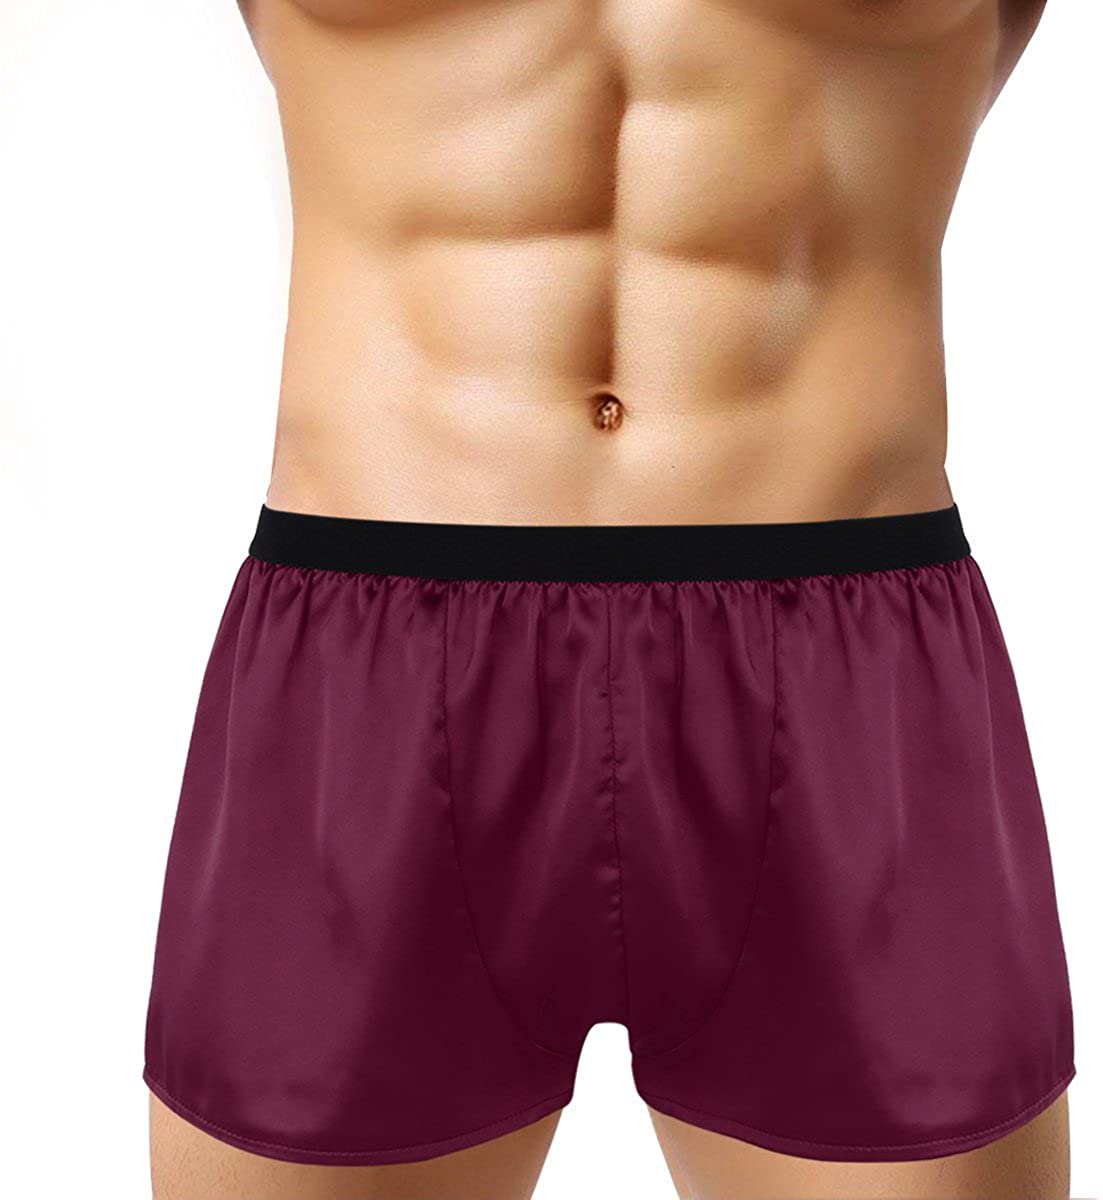 inlzdz Men's Silky Satin Boxer Briefs Underwear Summer Lounge Sports ...